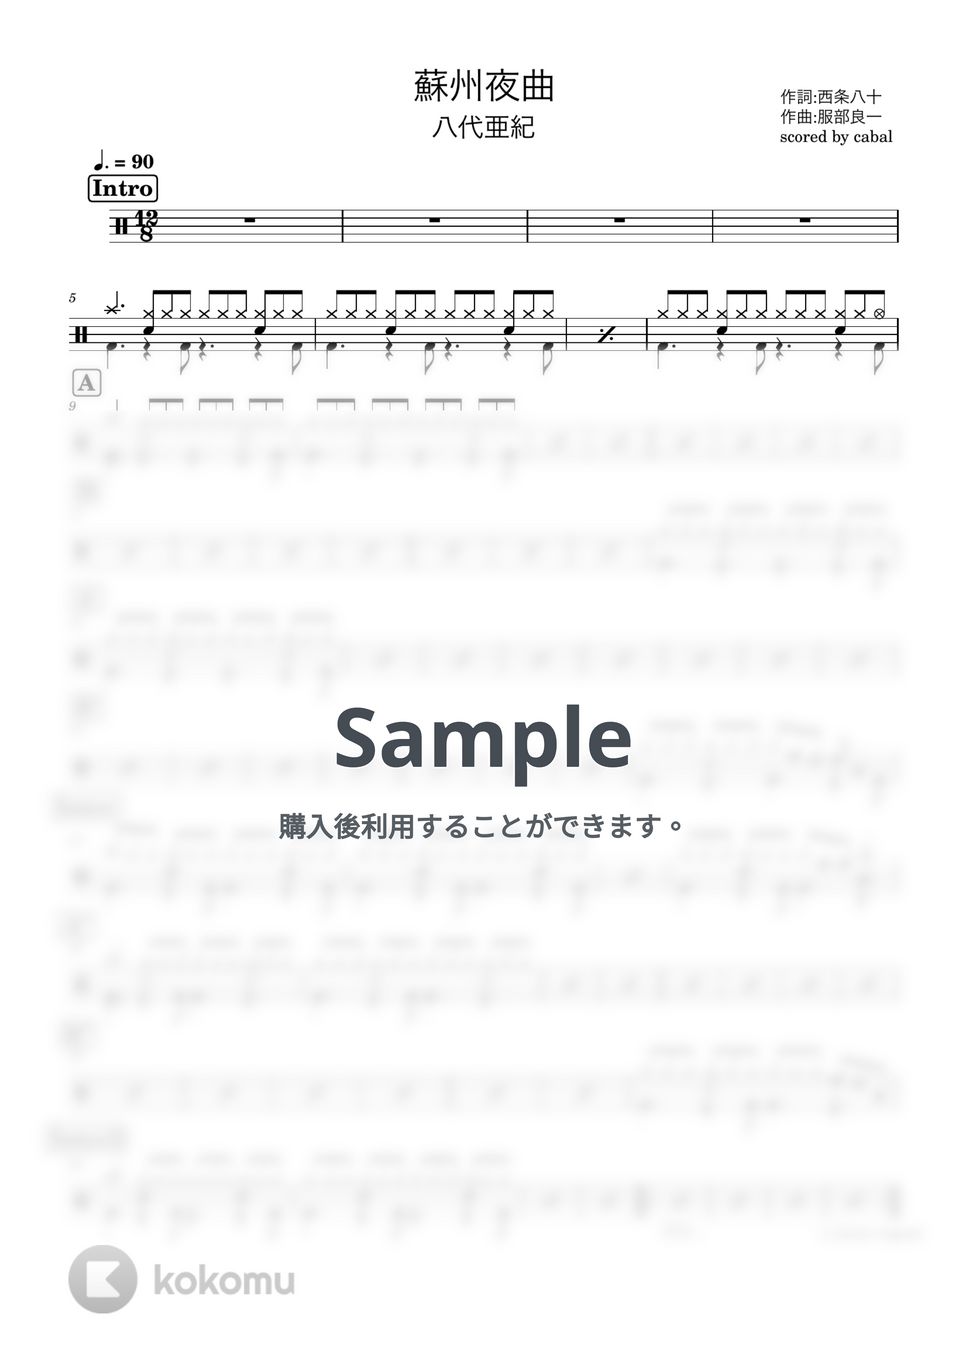 八代亜紀 - 蘇州夜曲 (ドラム譜面) by cabal